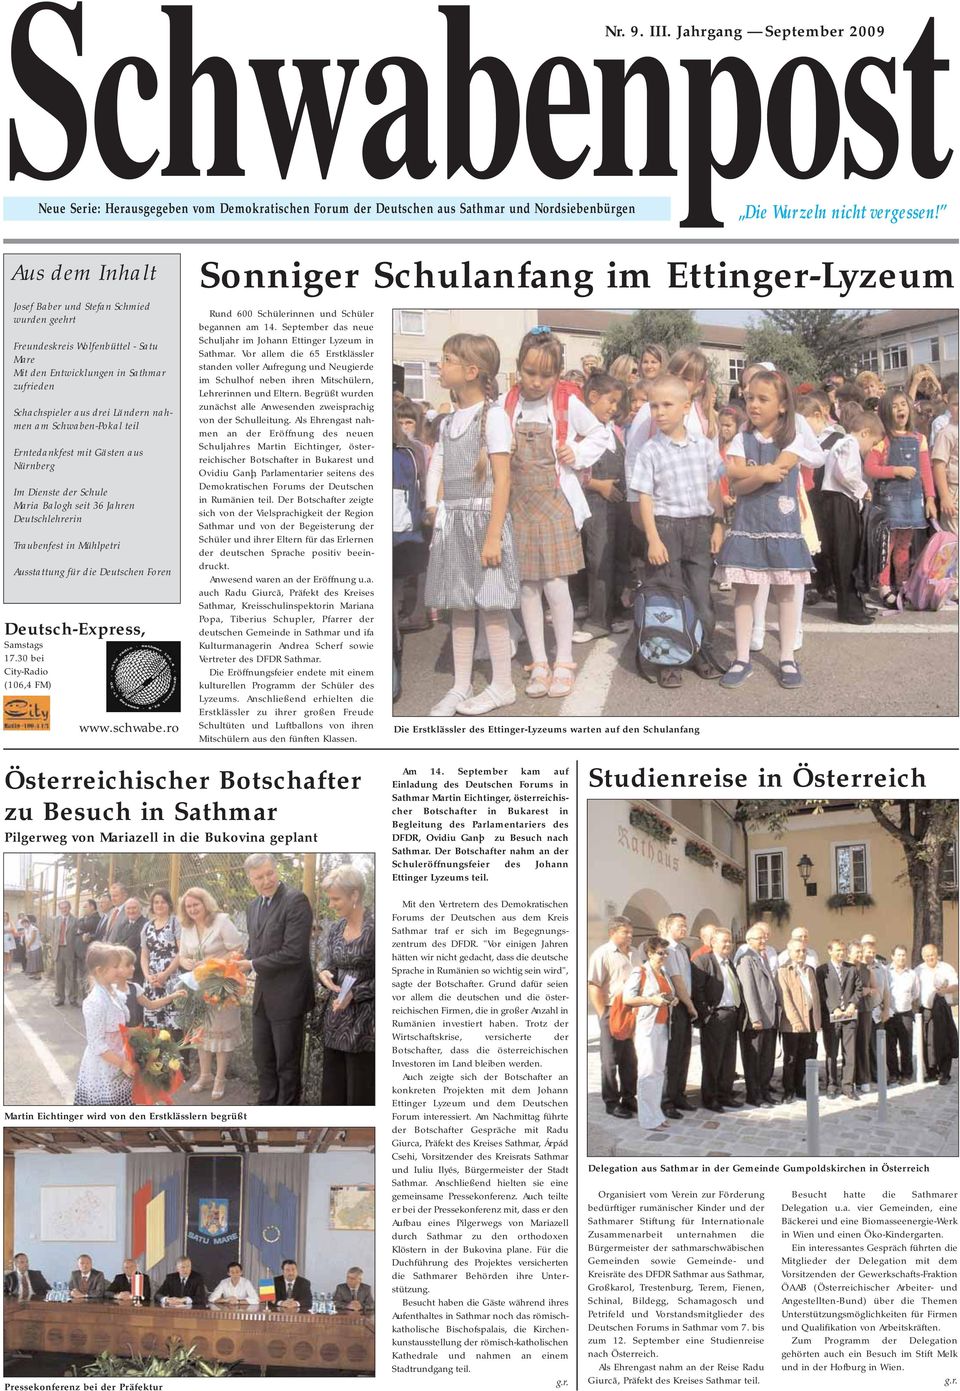 teil Erntedankfest mit Gästen aus Nürnberg Im Dienste der Schule Maria Balogh seit 36 Jahren Deutschlehrerin Traubenfest in Mühlpetri Ausstattung für die Deutschen Foren Deutsch-Express, Samstags 17.